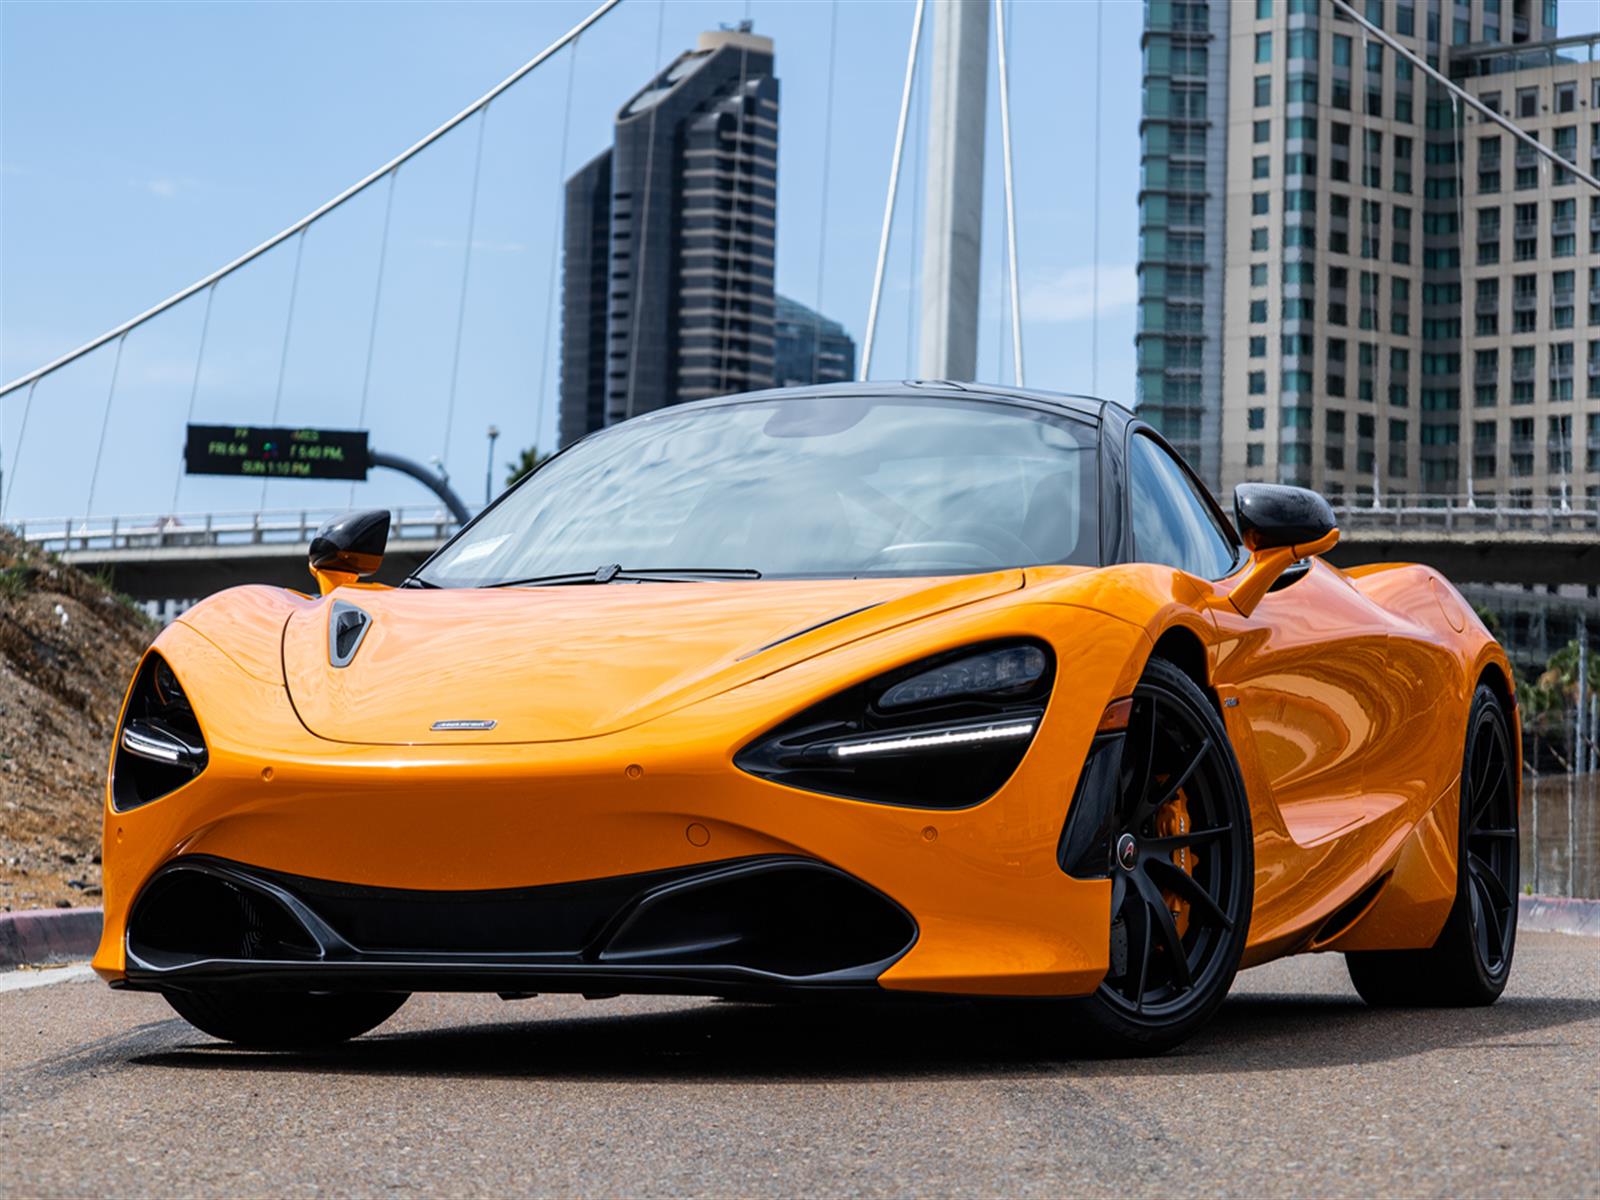  2018 McLaren 720S Performance Car